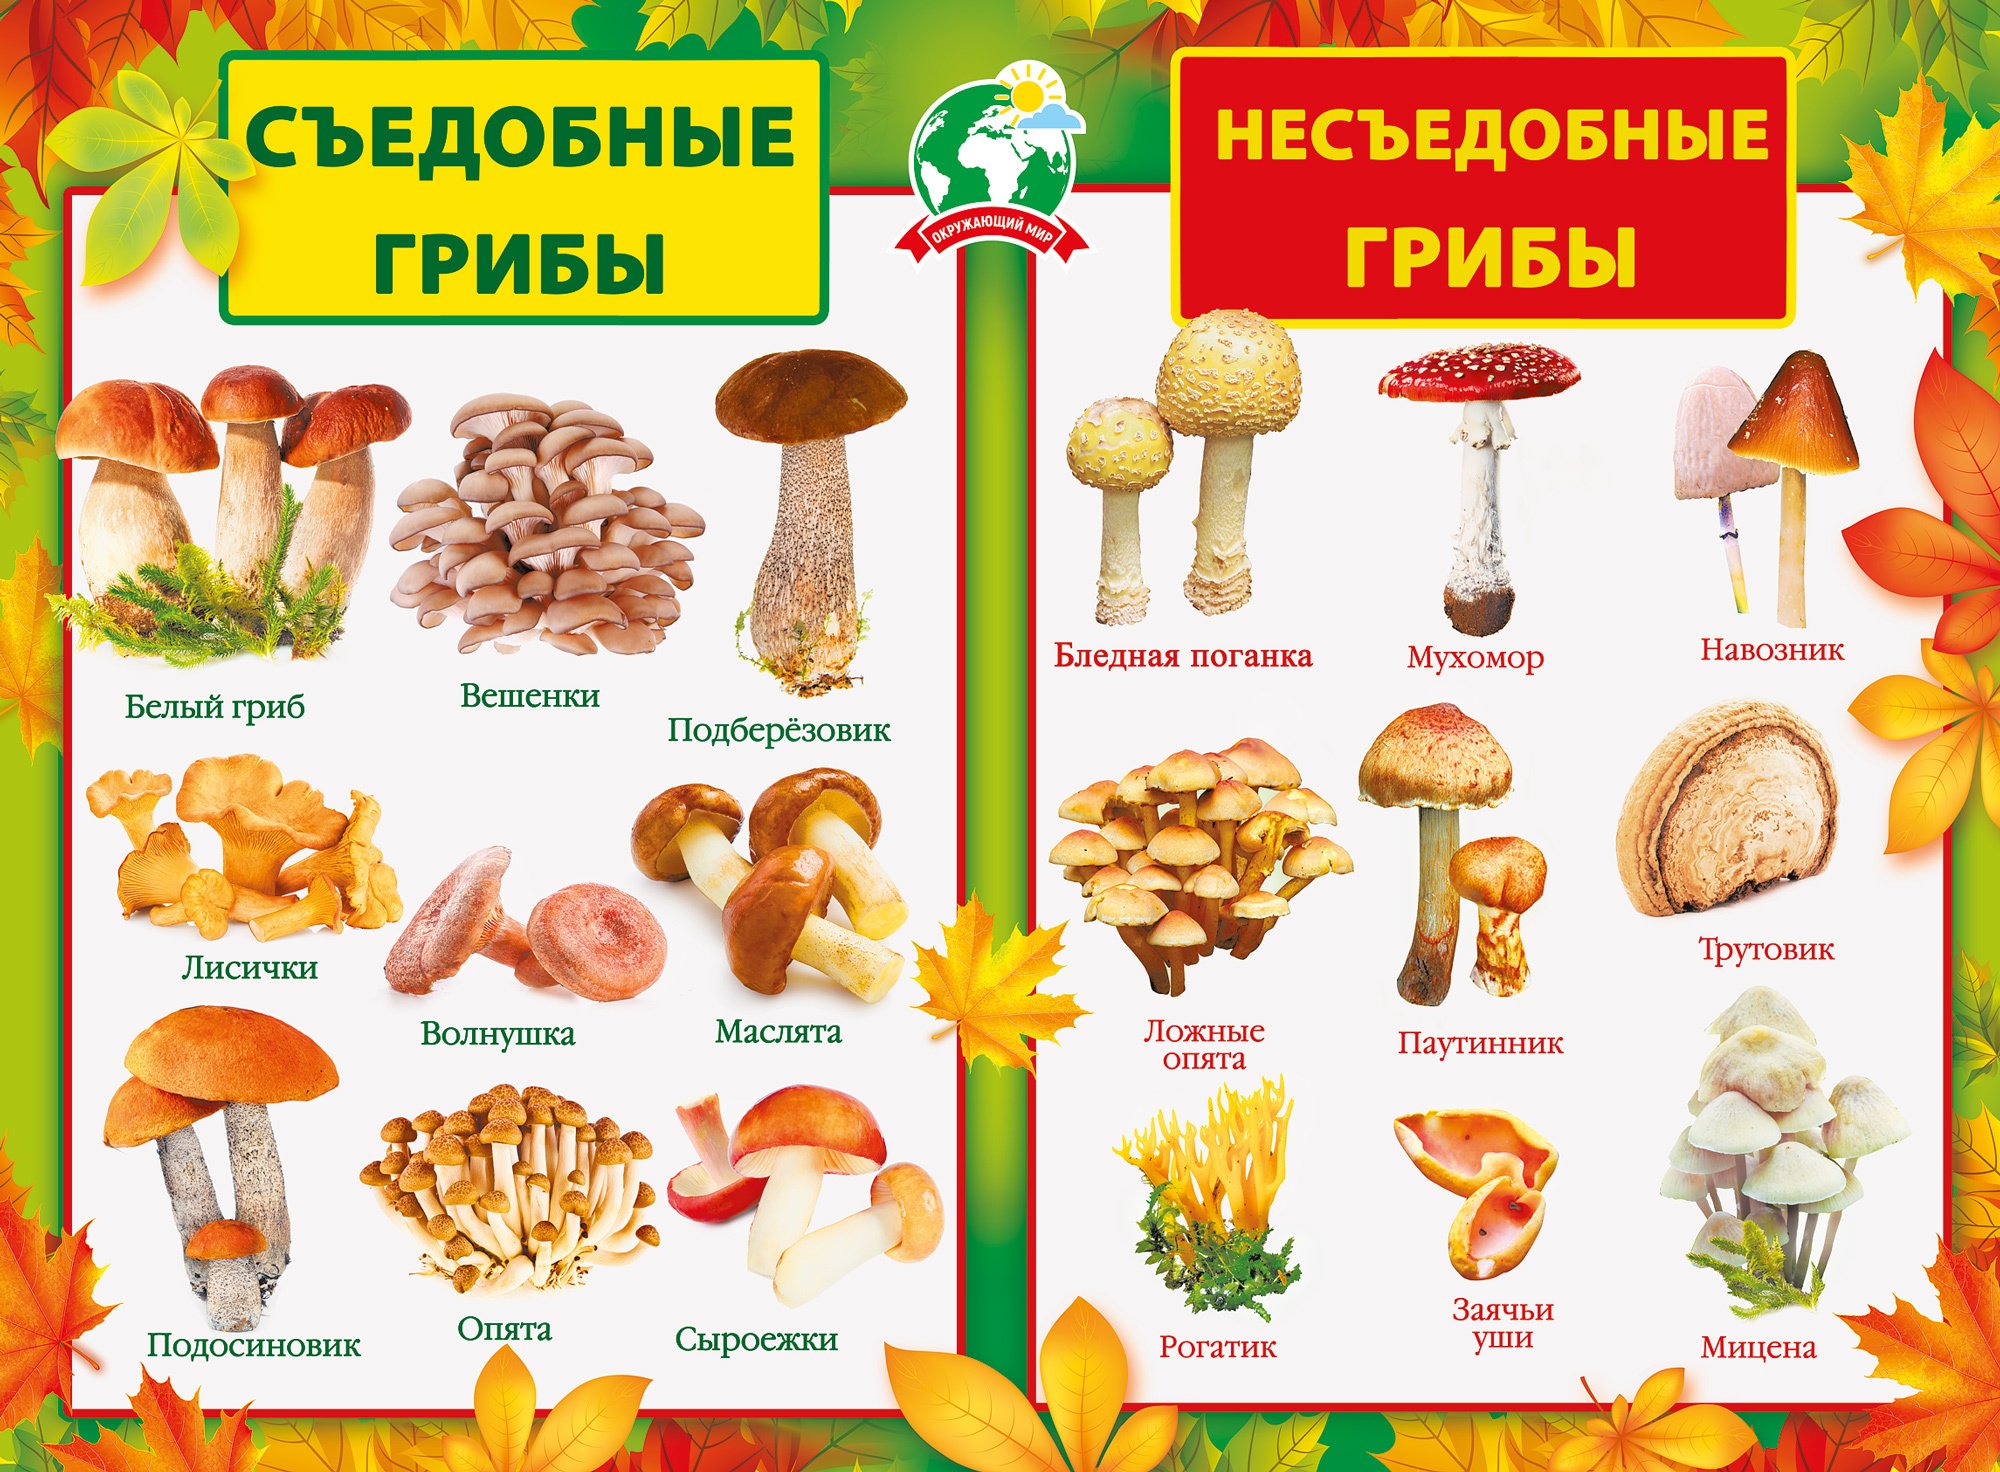 Шашлыки из грибов - вкусные и простые рецепты на любой вкус